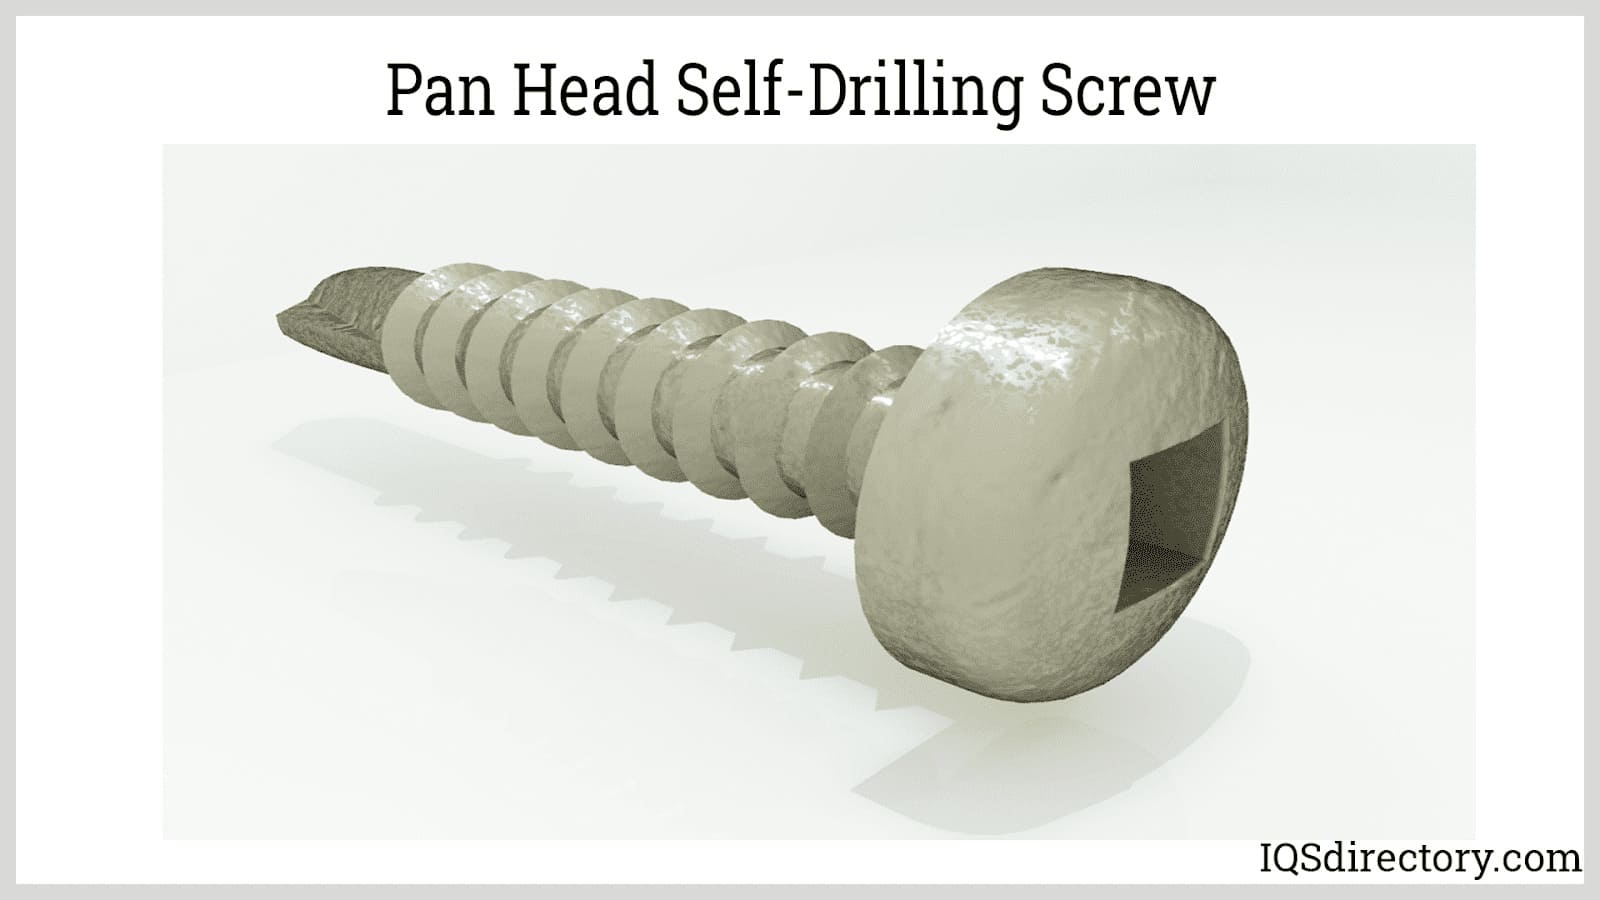 Pan Head Self-Drilling Screw